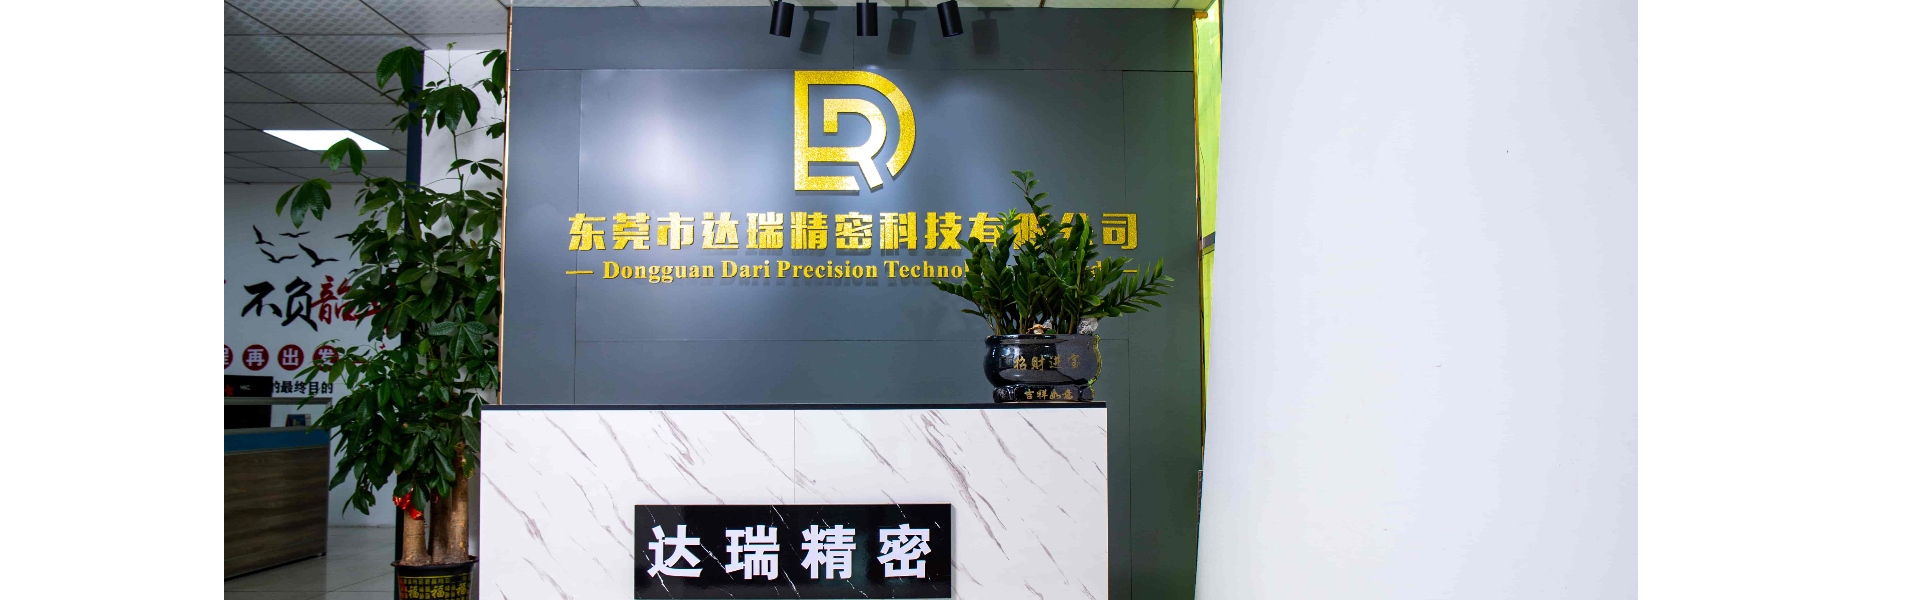 múnla plaisteach, múnlú insteallta, sliogán plaisteach,Dongguan Darui Precision Technology Co., Ltd.